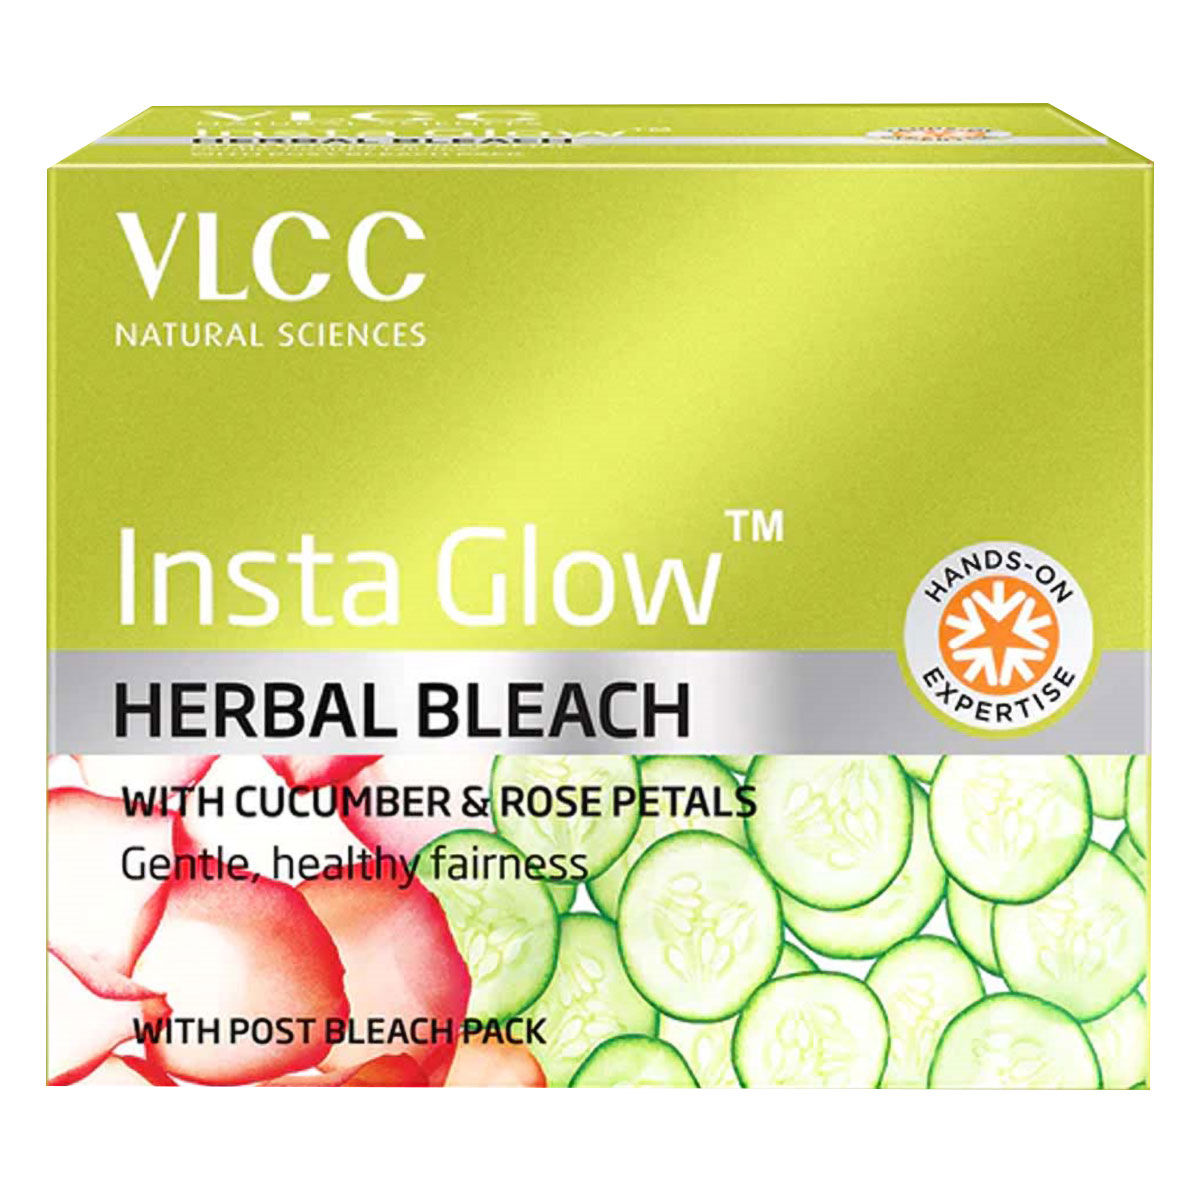 Buy VLCC Insta Glow Herbal Bleach, 27 gm Online